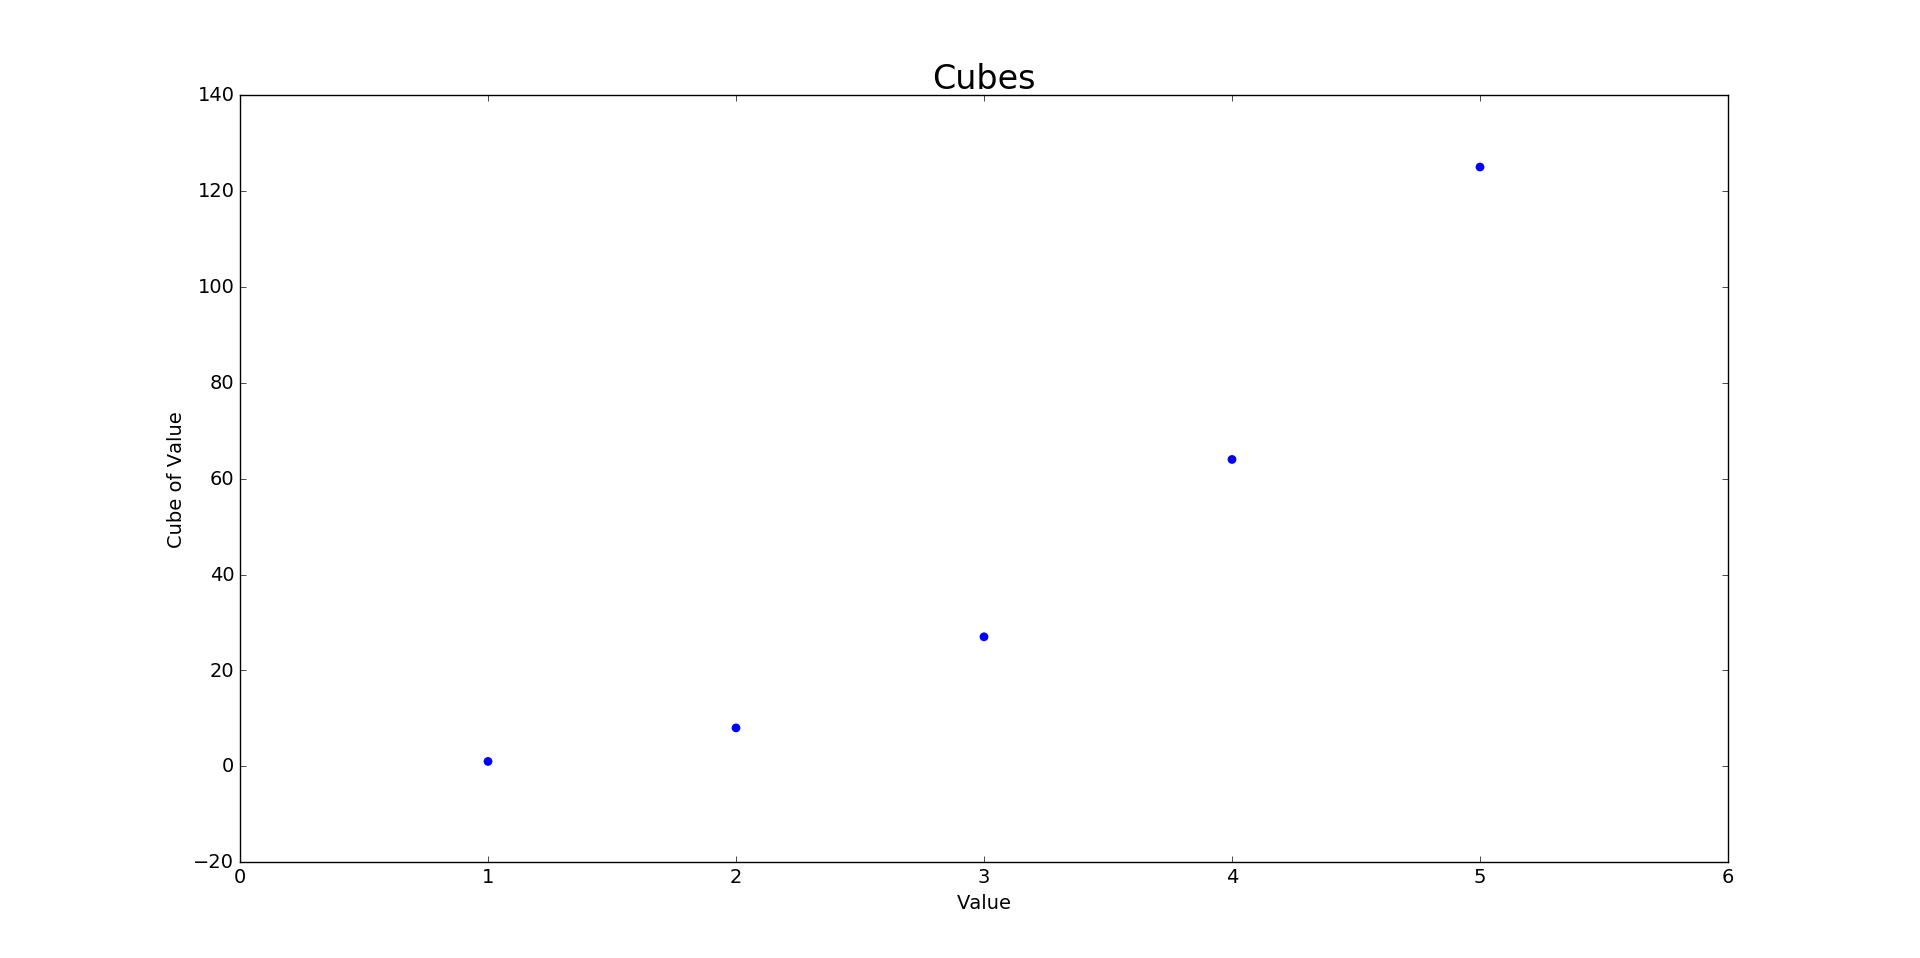 Plot showing 5 cubes